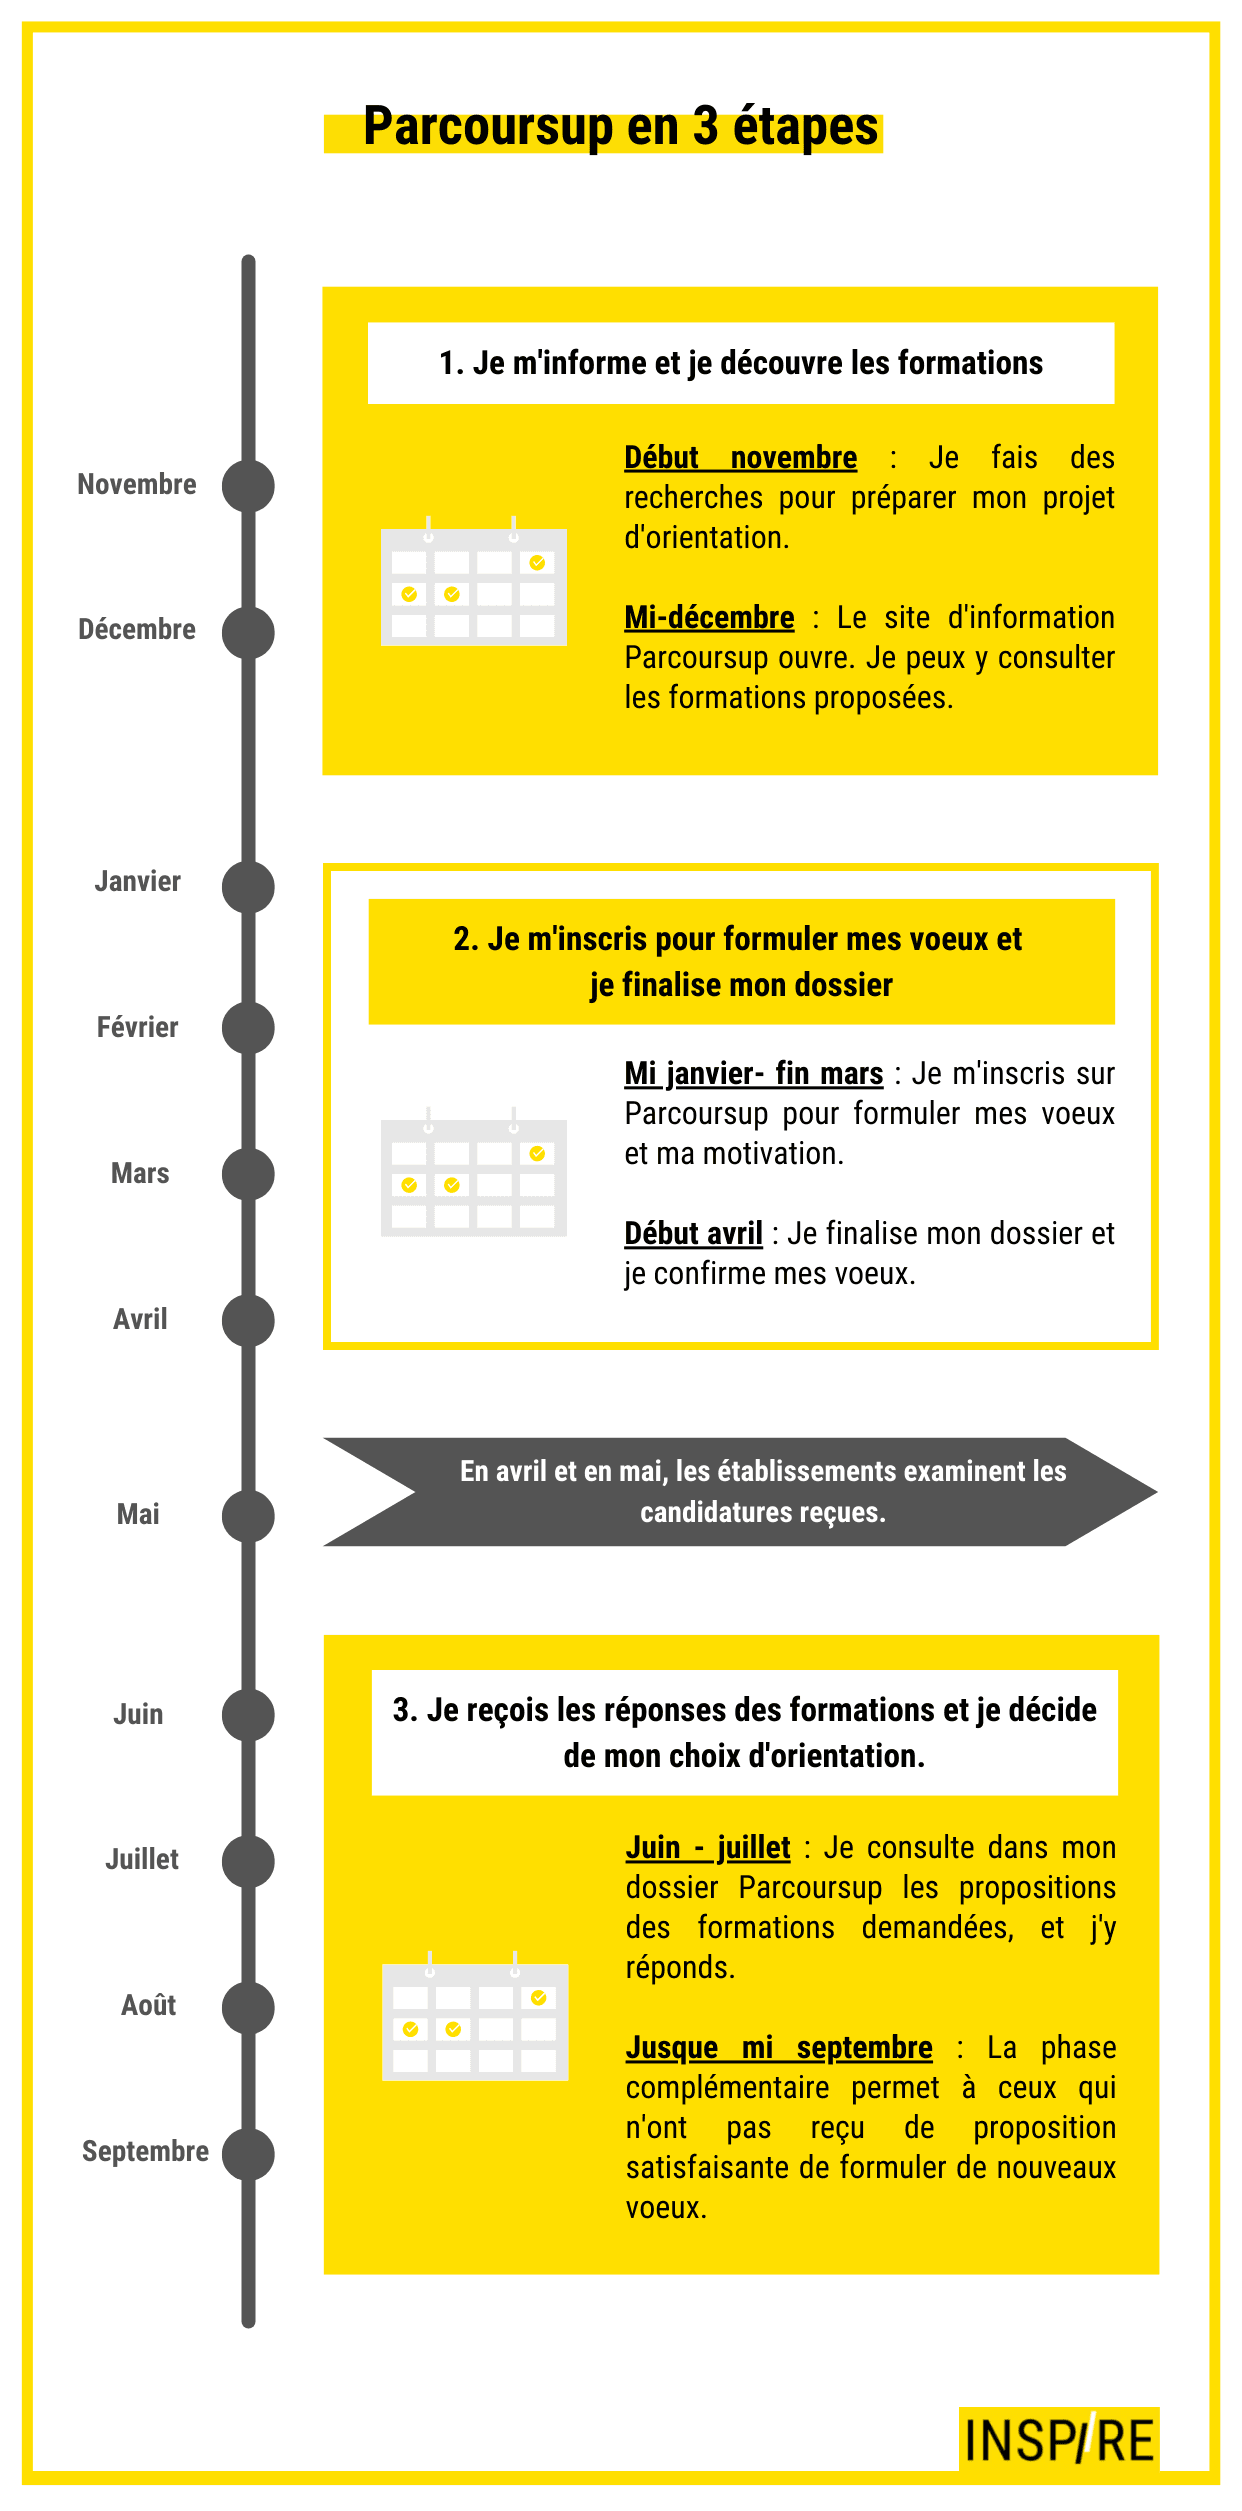 Infographie calendrier Parcoursup en 3 étapes